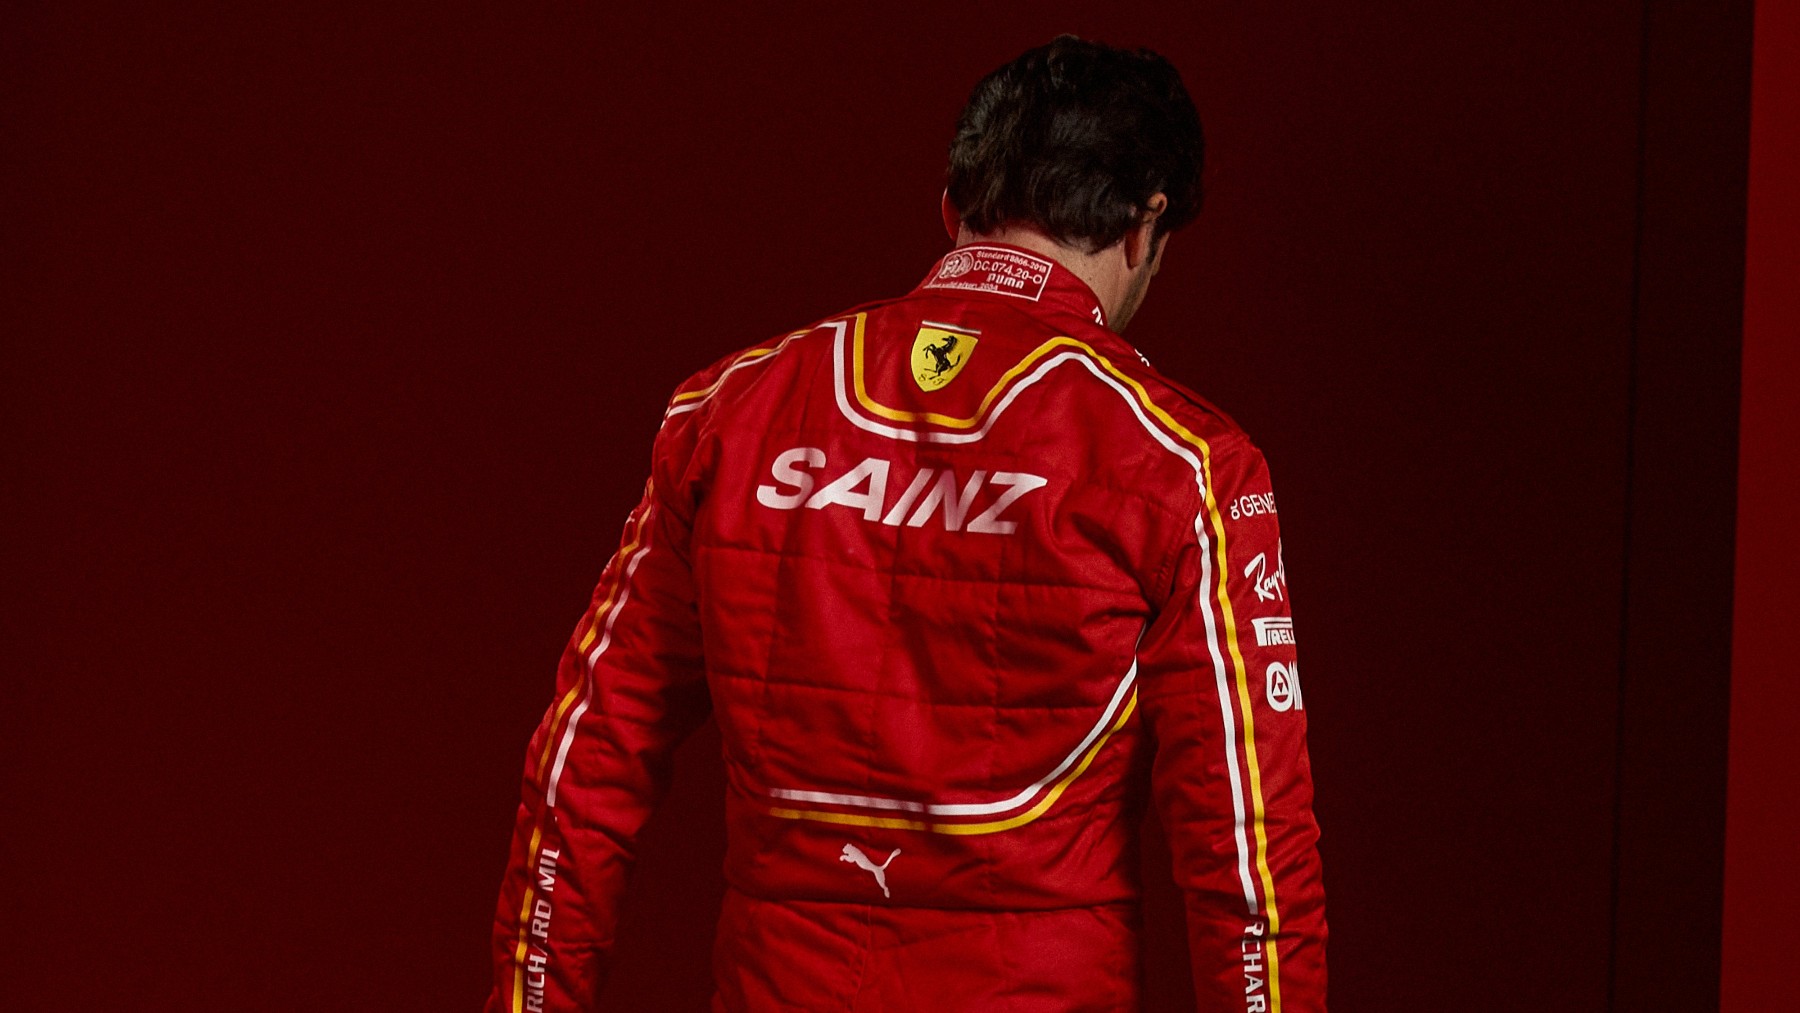 Así es la parte de atrás del nuevo mono de Carlos Sainz en Ferrari. (Scuderia Ferrari)